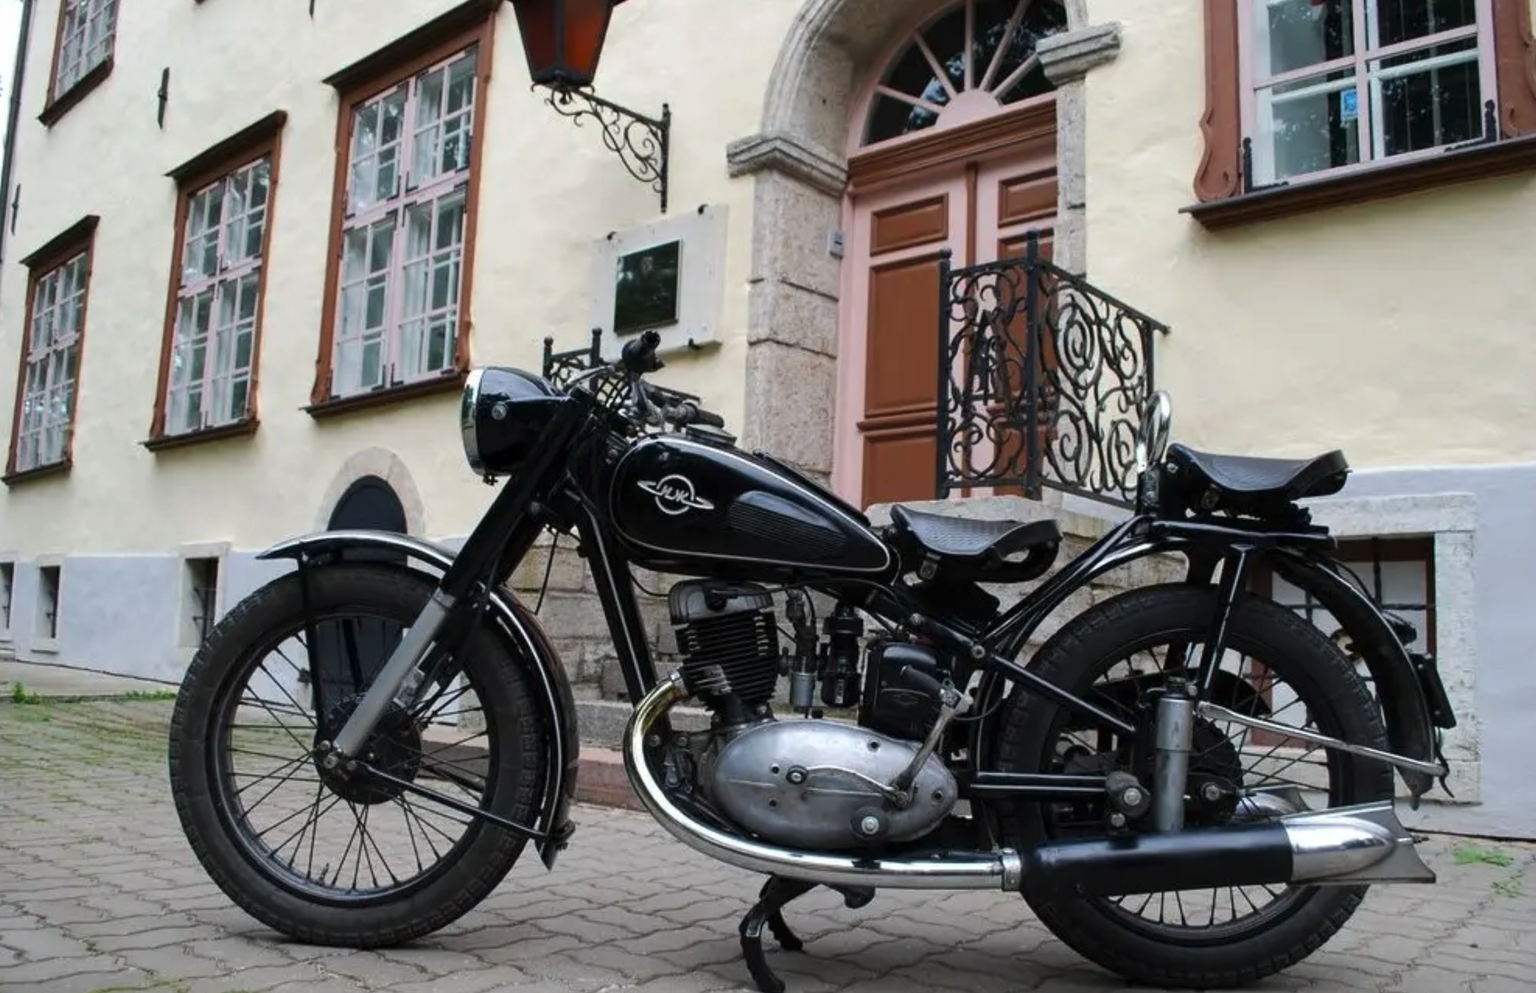 Иж-49, выпуска 1956 года - экспонат нарвского музея ретро-мотоциклов